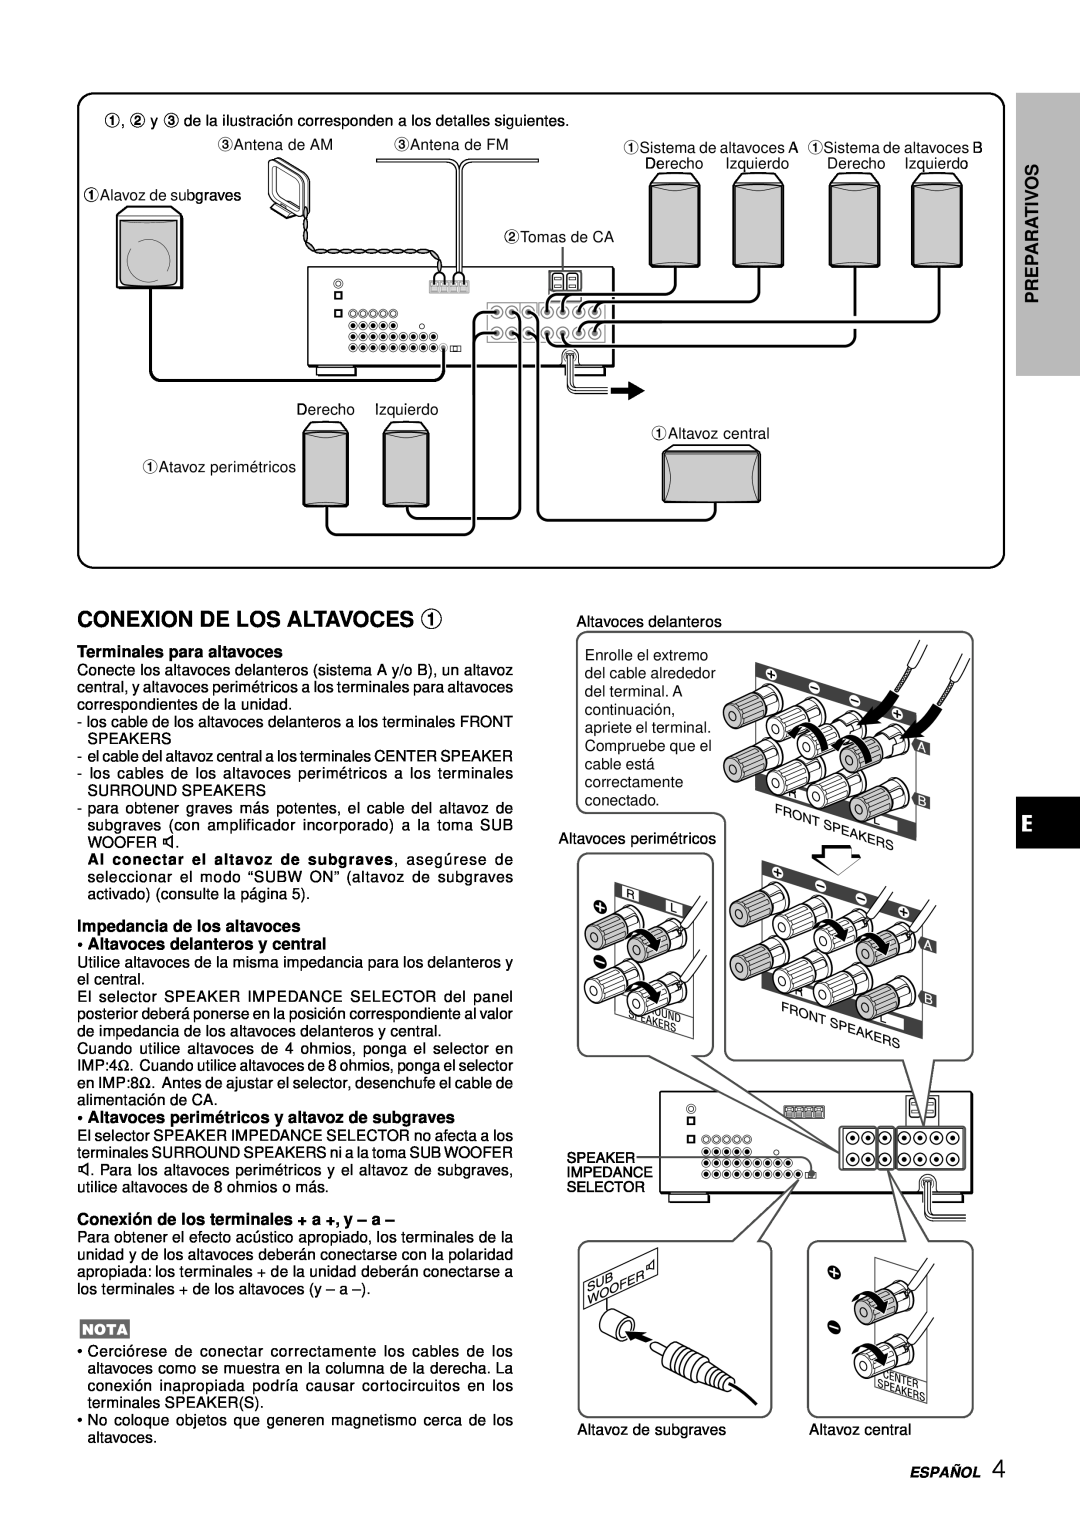 Aiwa AV-D77 Conexion De Los Altavoces, Preparativos, Terminales para altavoces, Impedancia de los altavoces, 3Antena de AM 